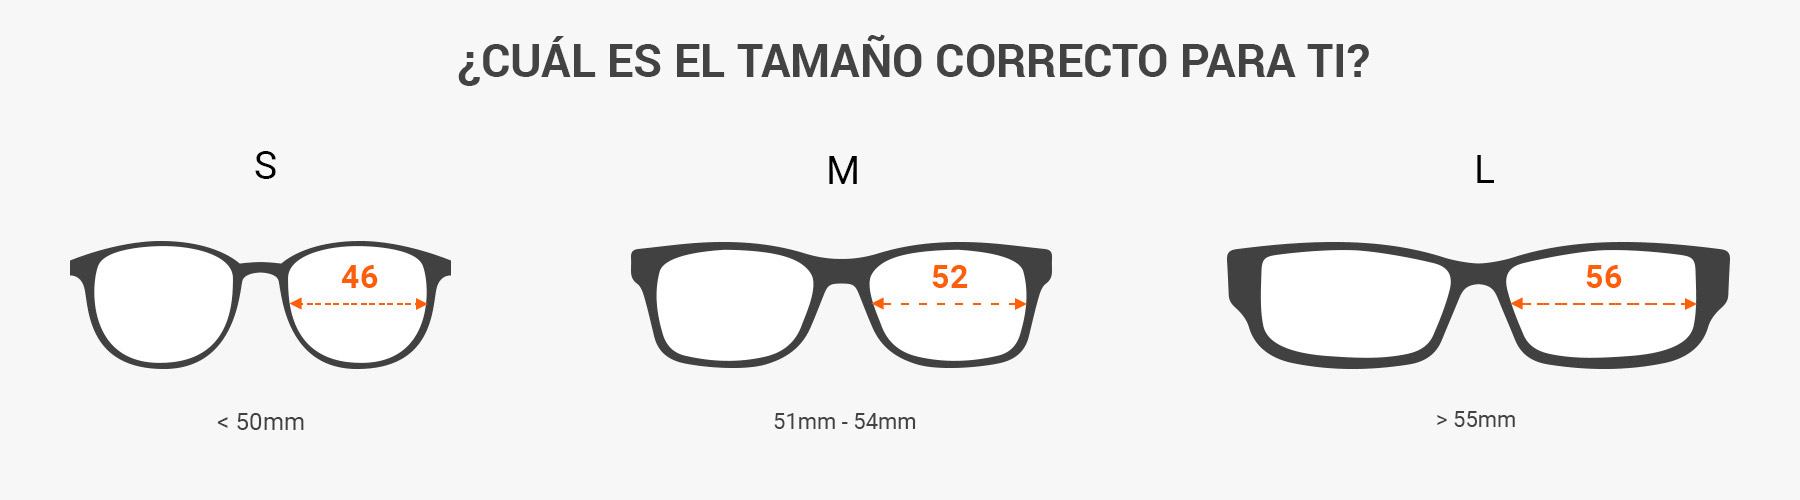 idioma Indirecto enfocar Cómo saber tu talla de gafas de sol: Paso por paso (con fotos) | Lentiamo